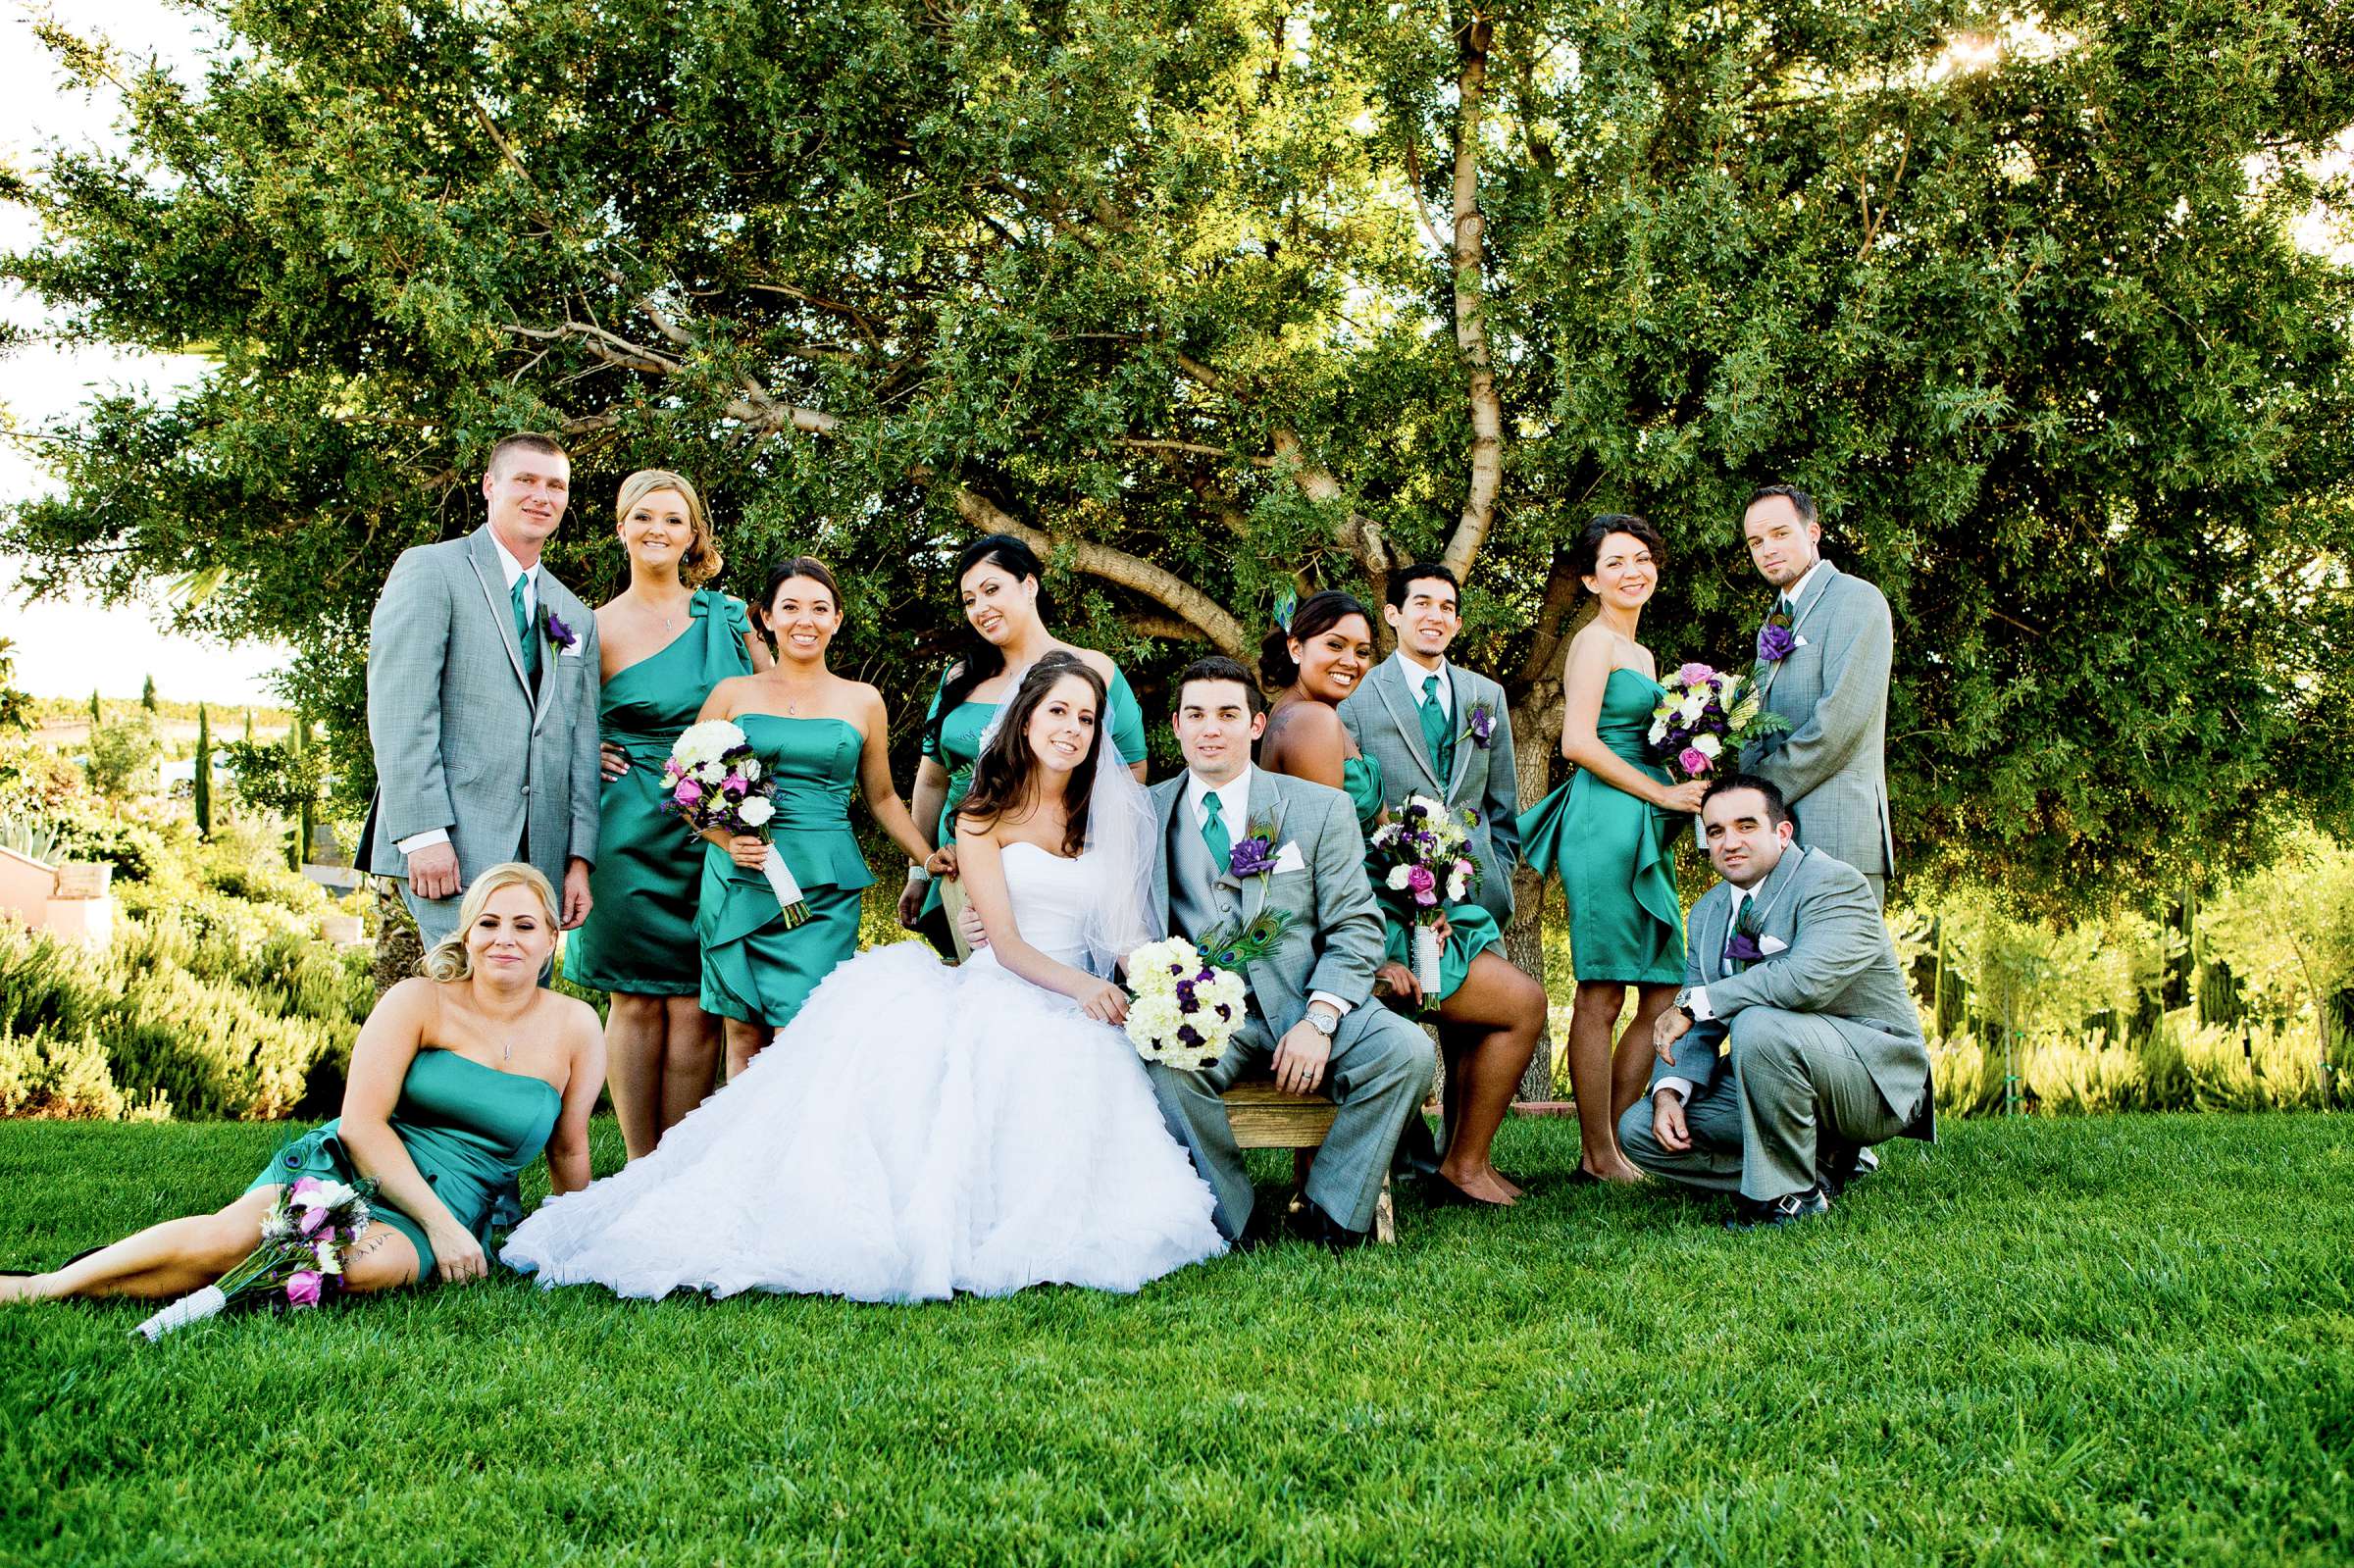 Mount Palomar Winery Wedding, Brandi and Jason Wedding Photo #321672 by True Photography